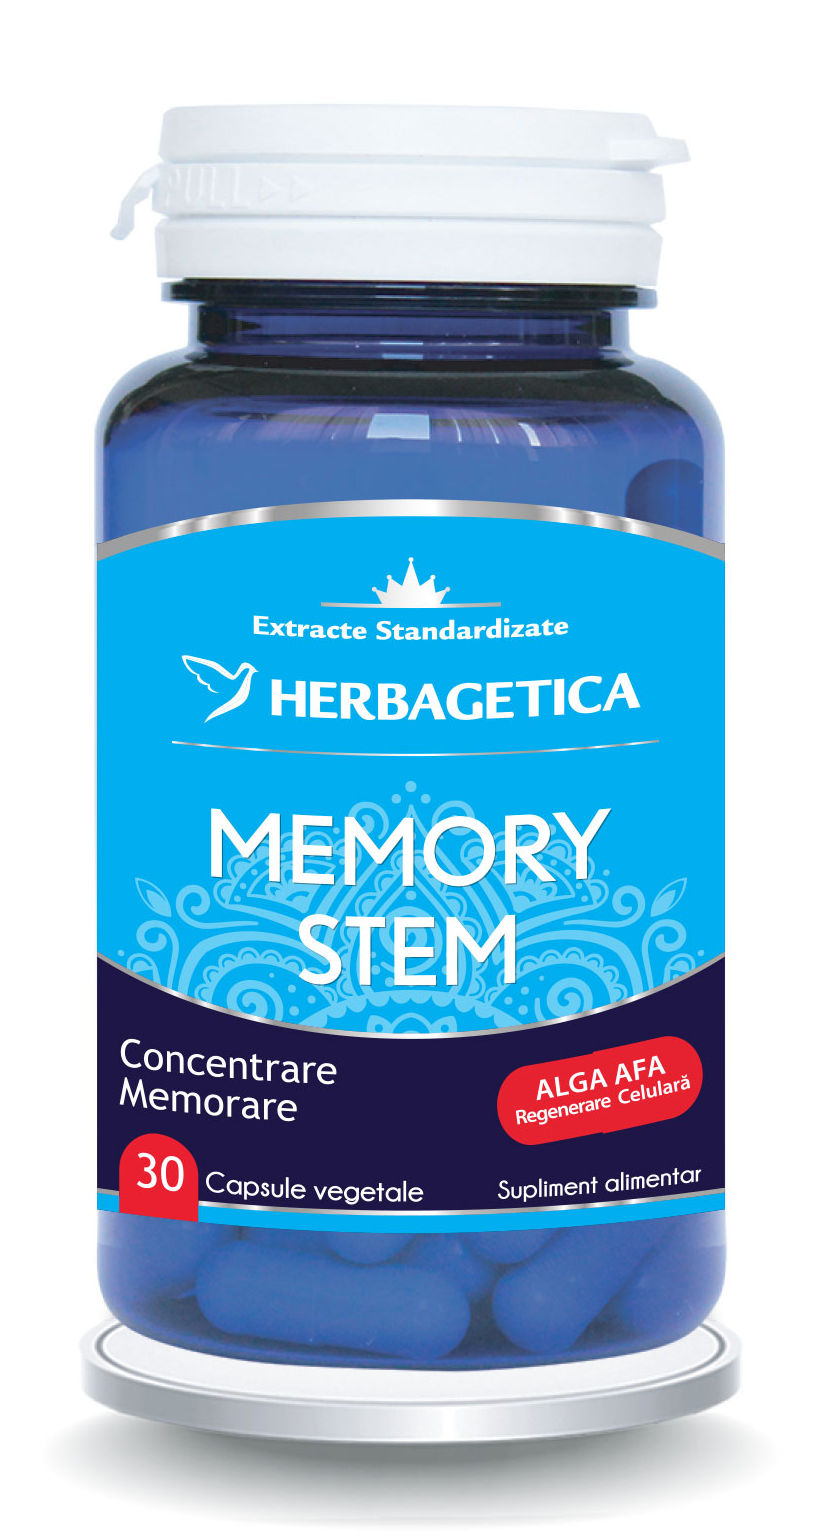 Memory stem